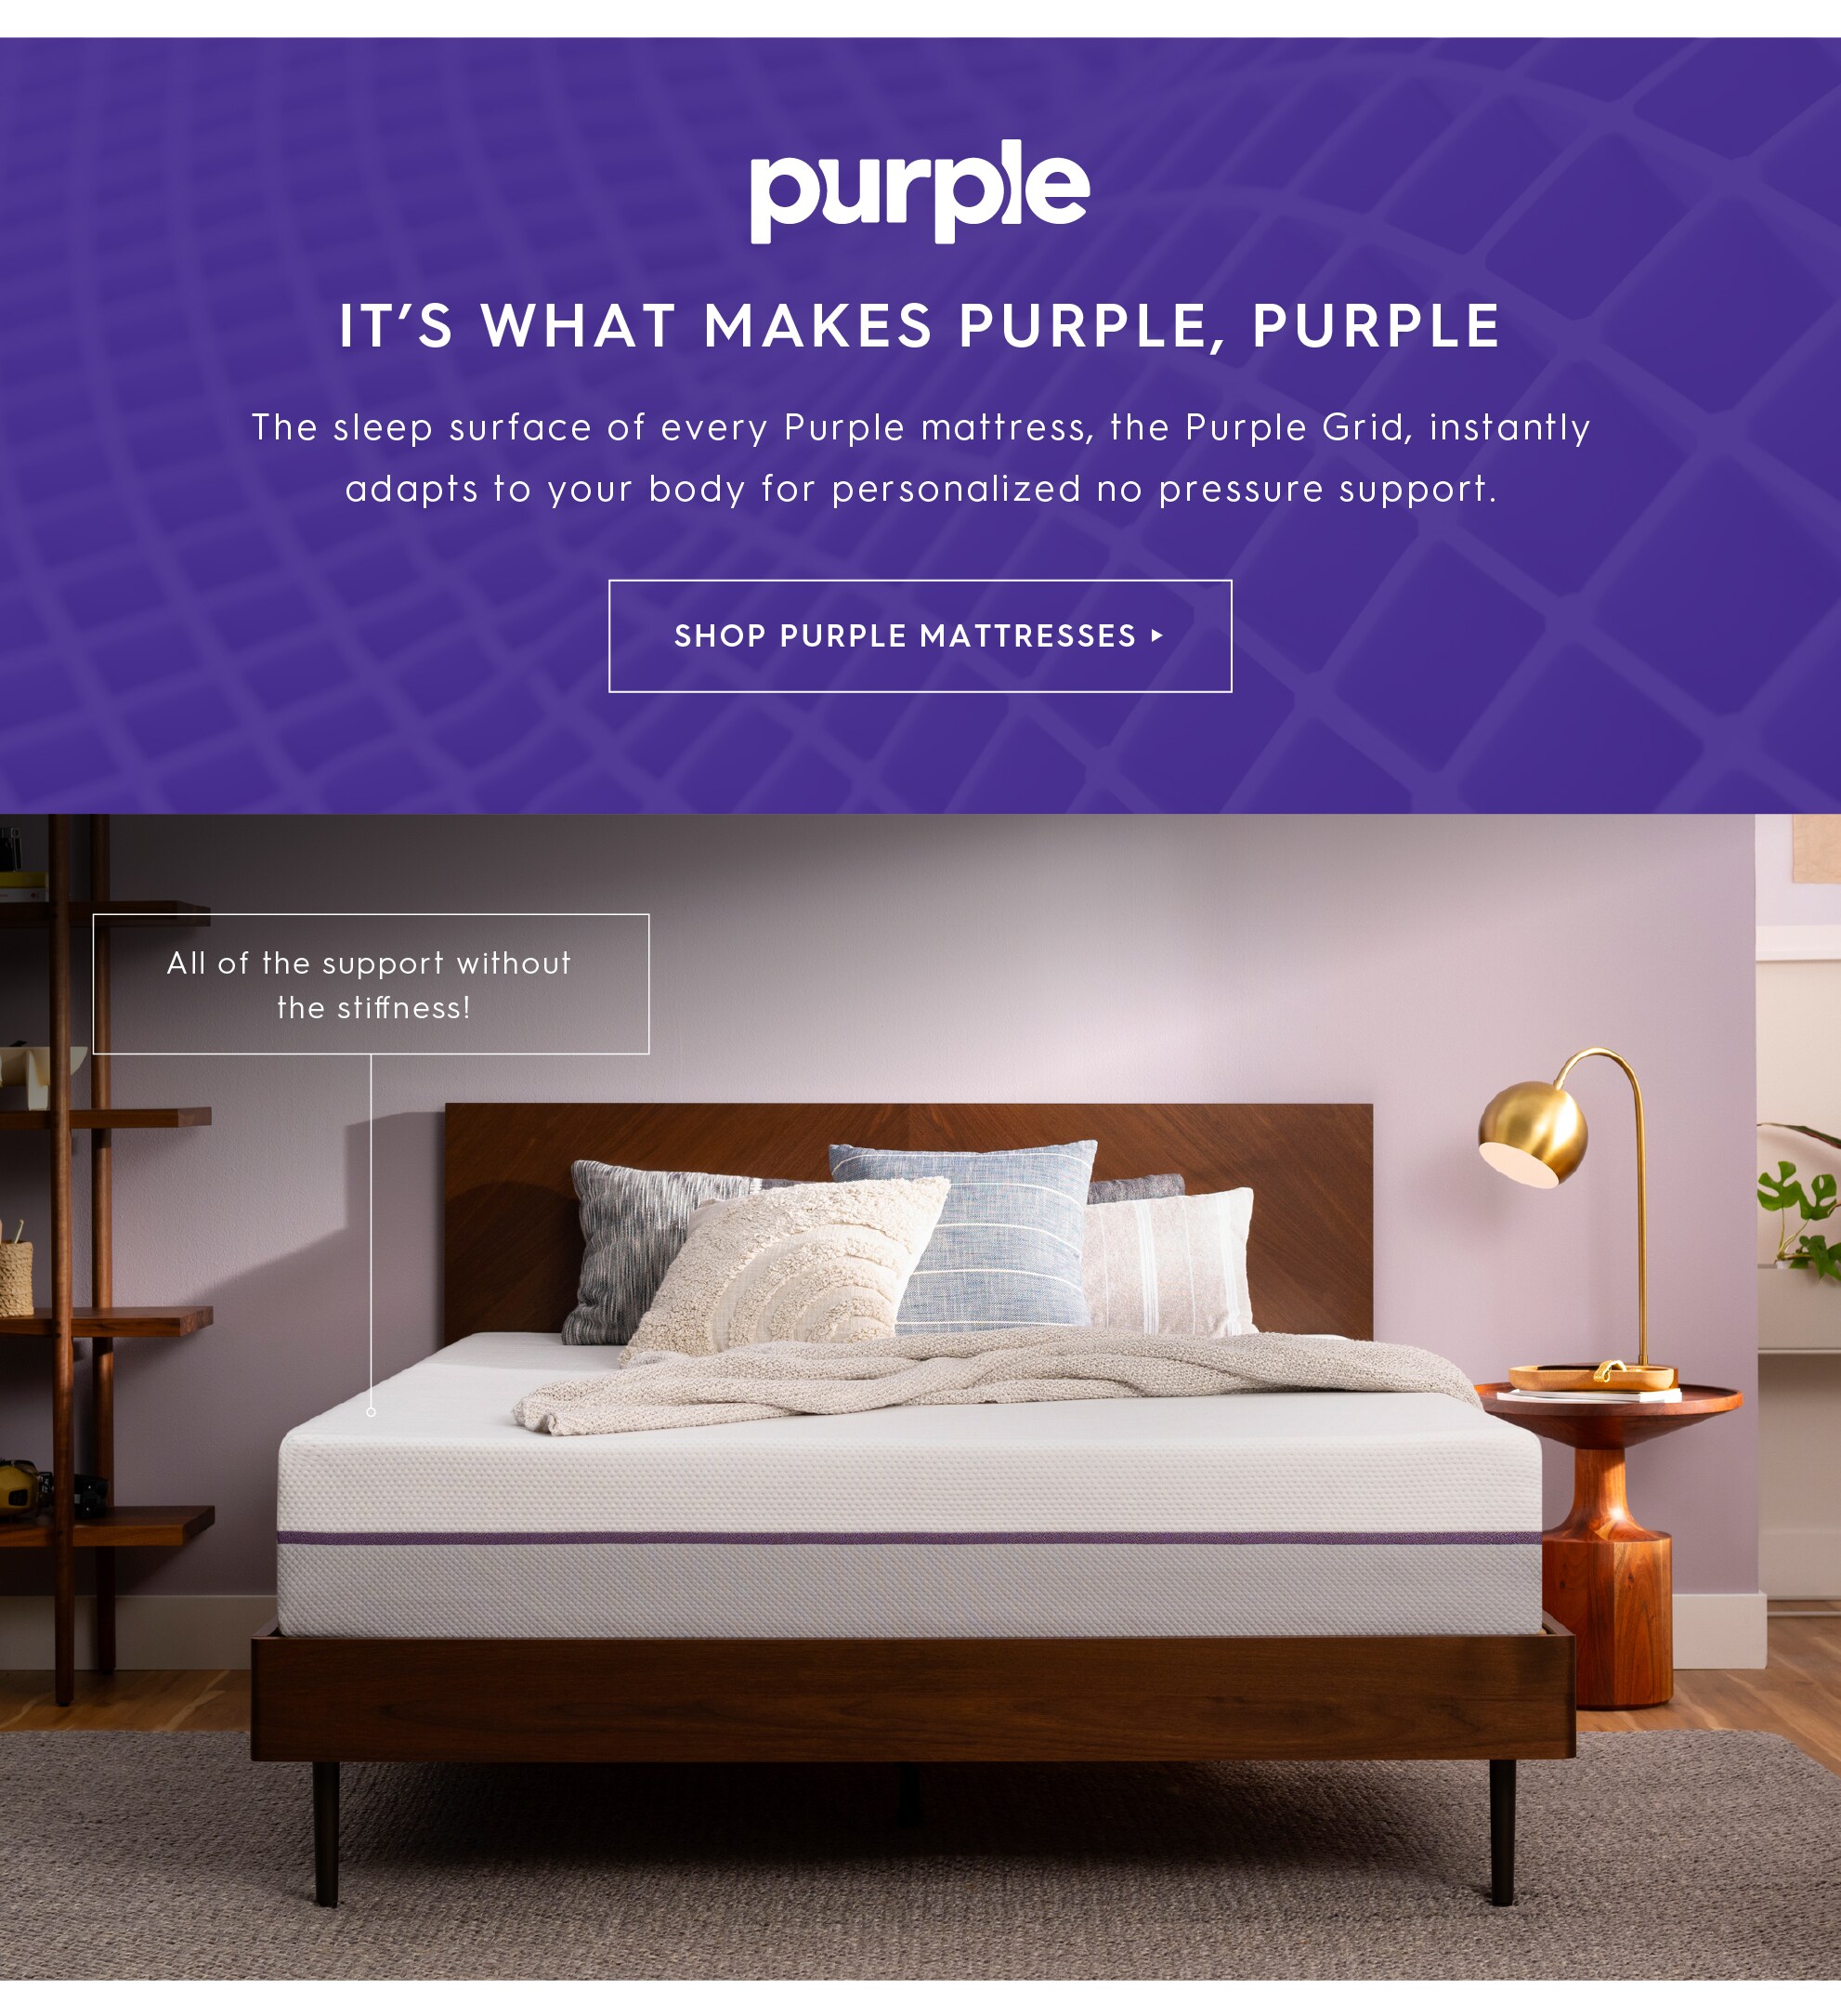 Shop Purple mattresses.